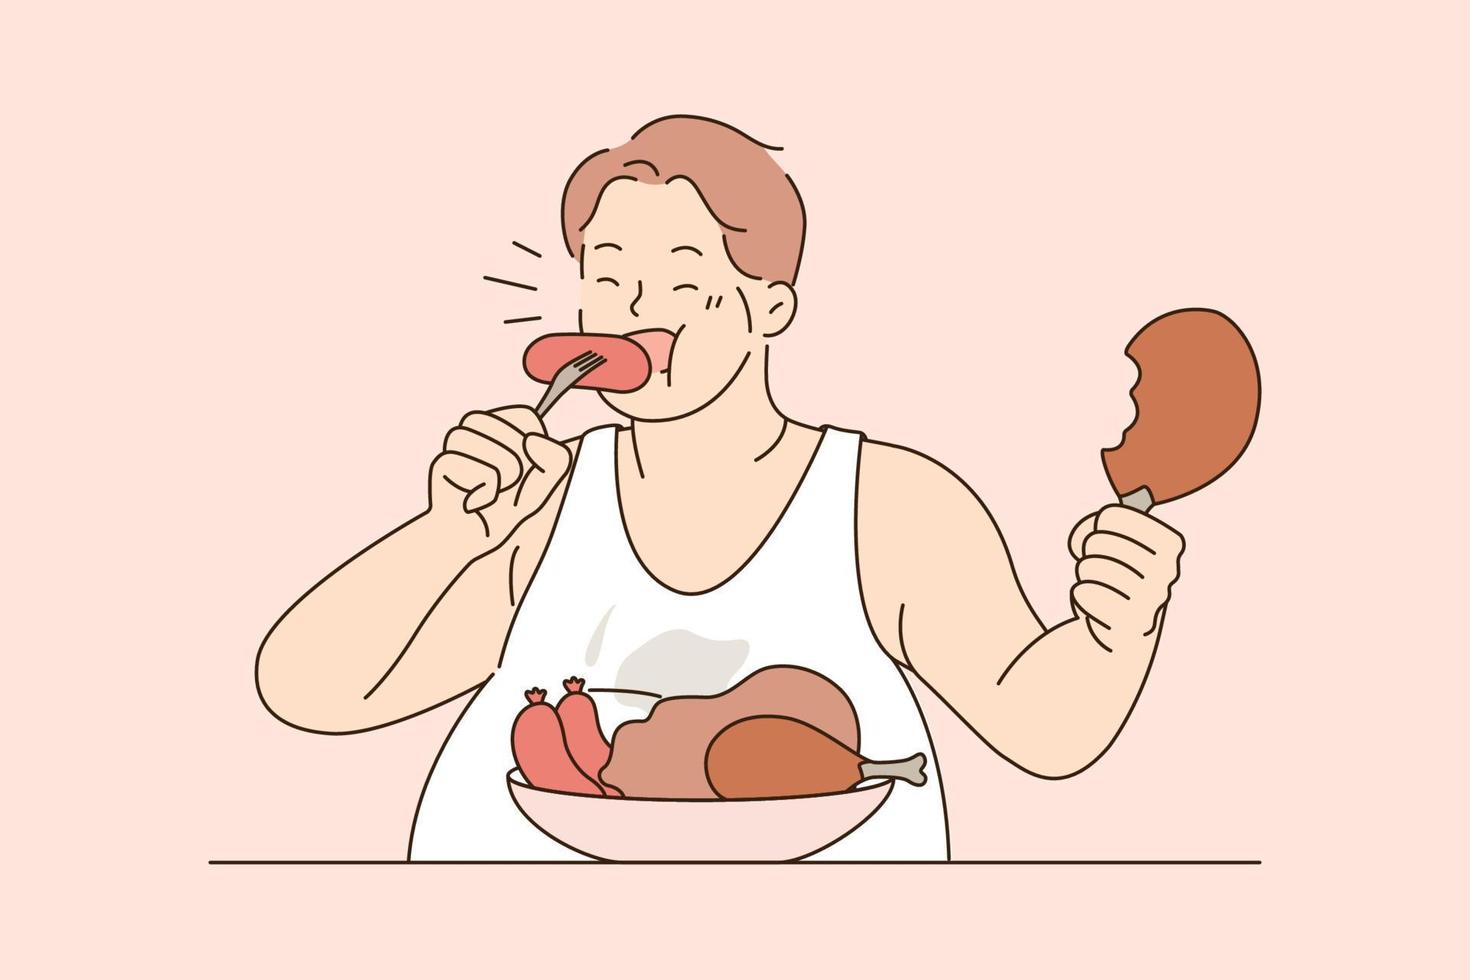 über essen und ungesundes ernährungskonzept. dicker mann sitzt und isst wurstfleisch mit appetit zu viel essen lebender ungesunder lebensstilvektorillustration vektor